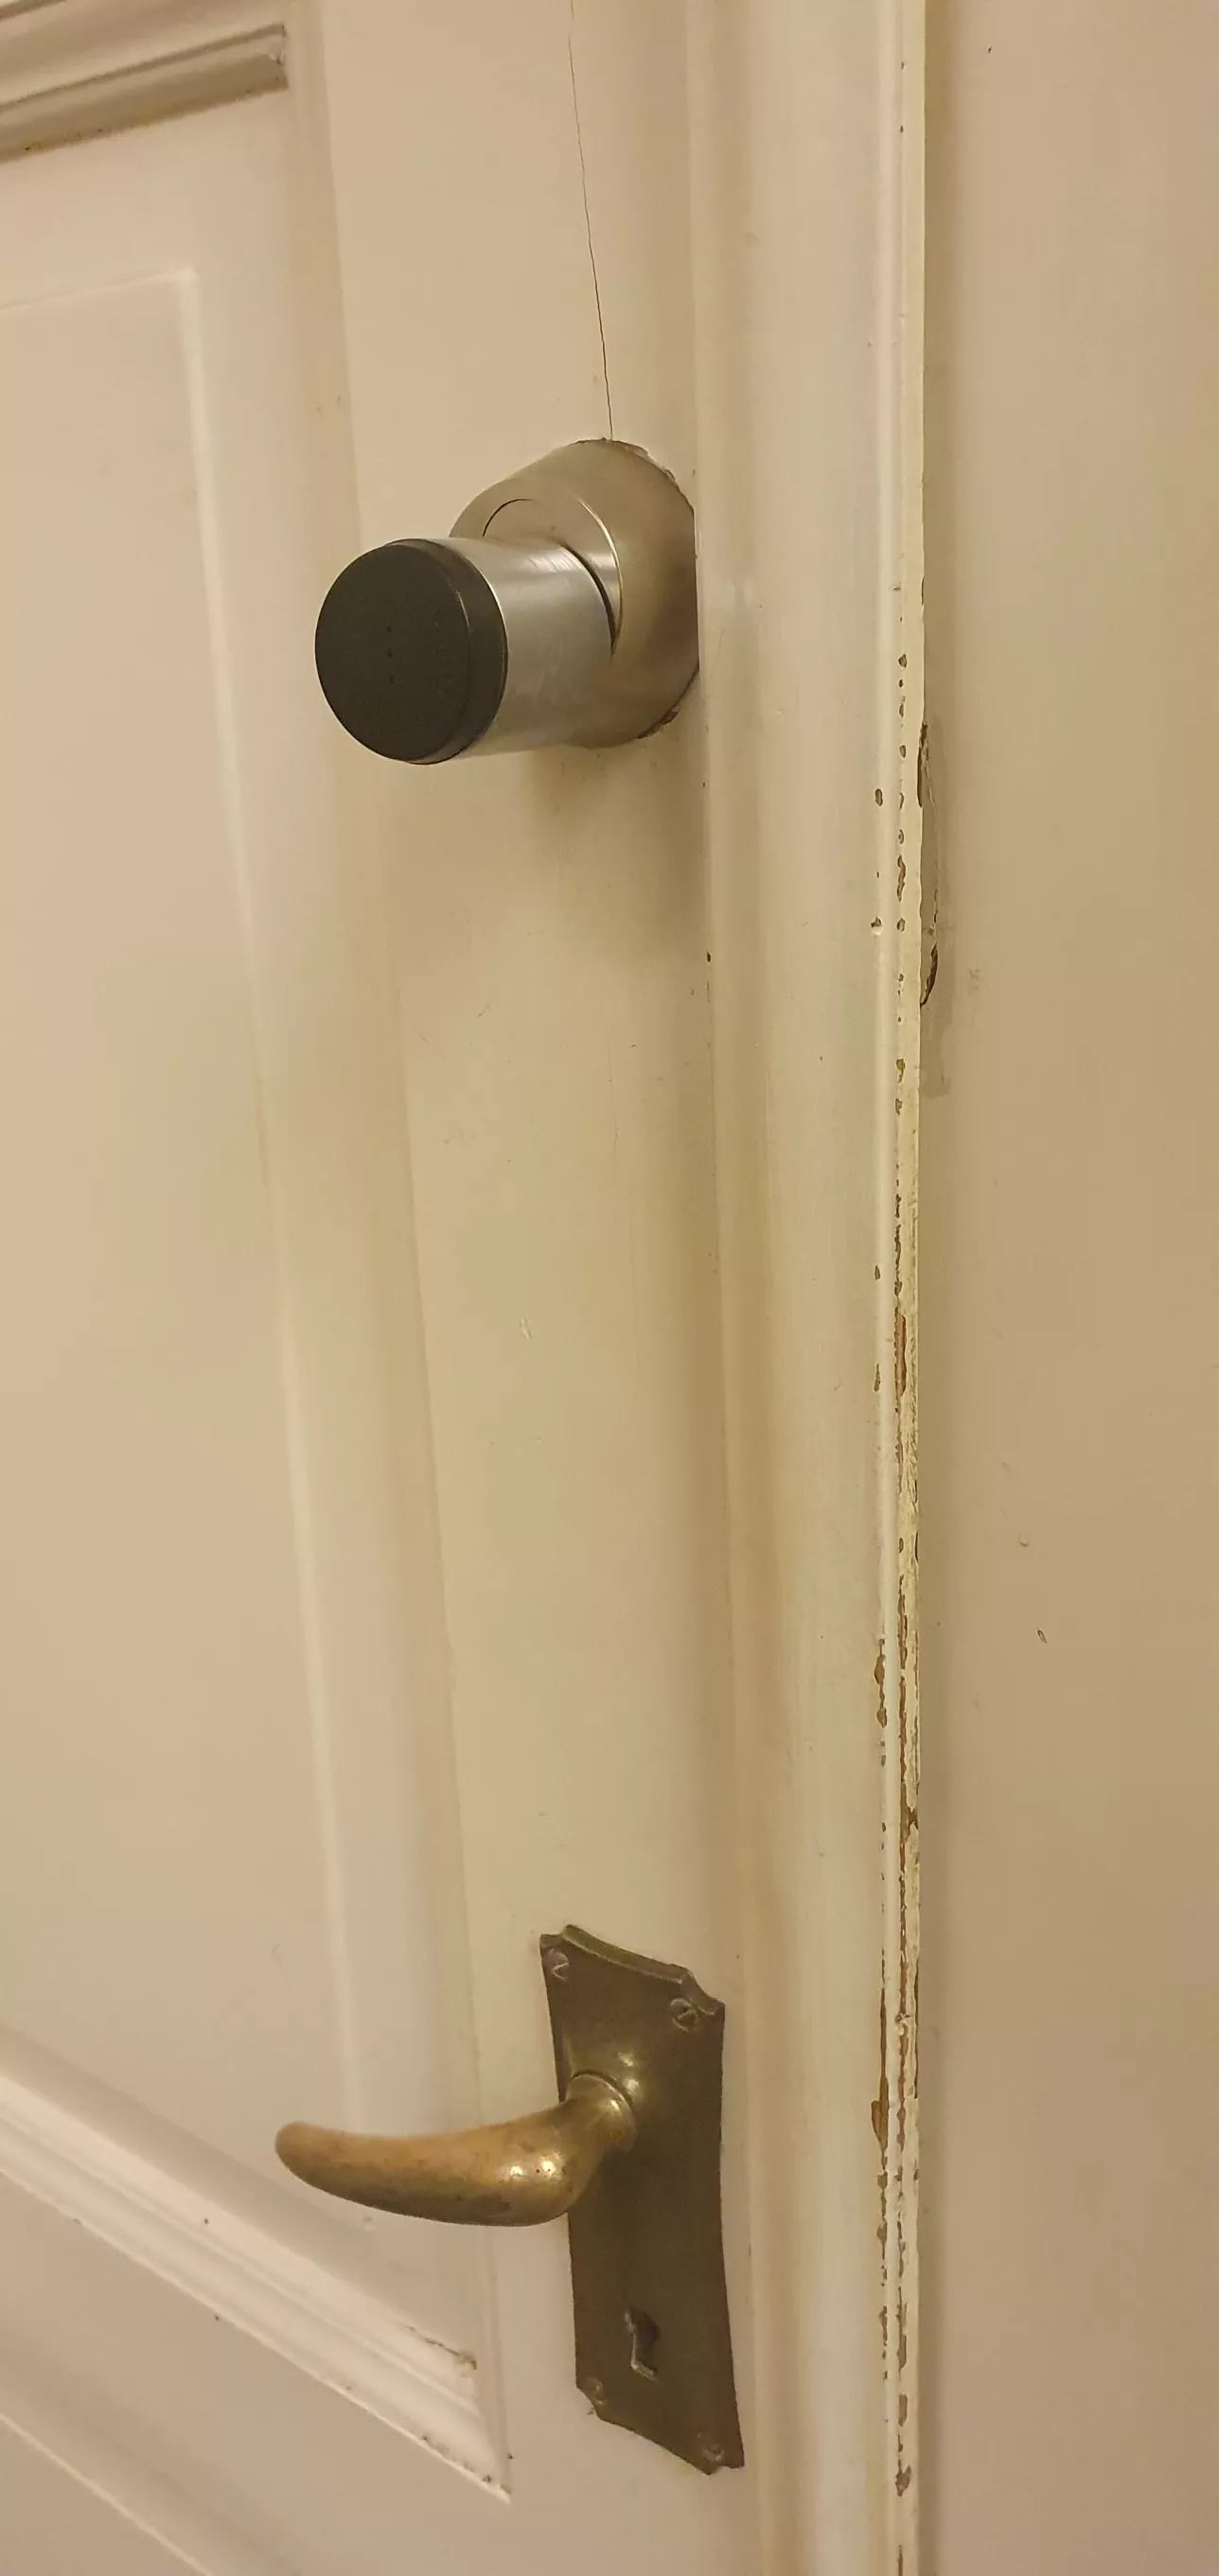 wooden door with a round black card reader above the door handle